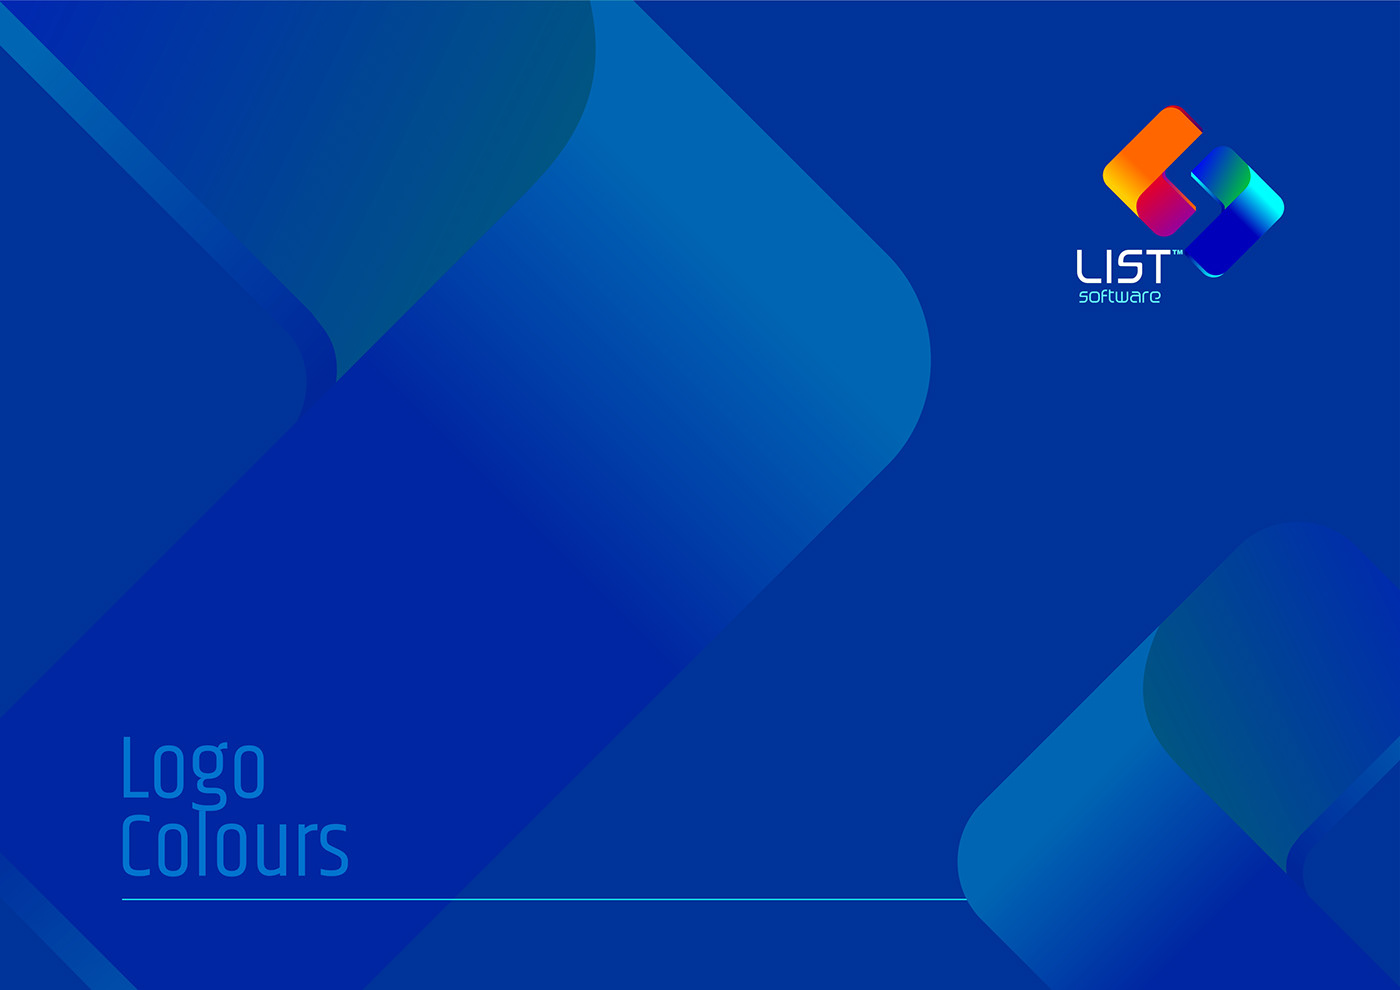 #LIST Software Logo #LISTSoftware